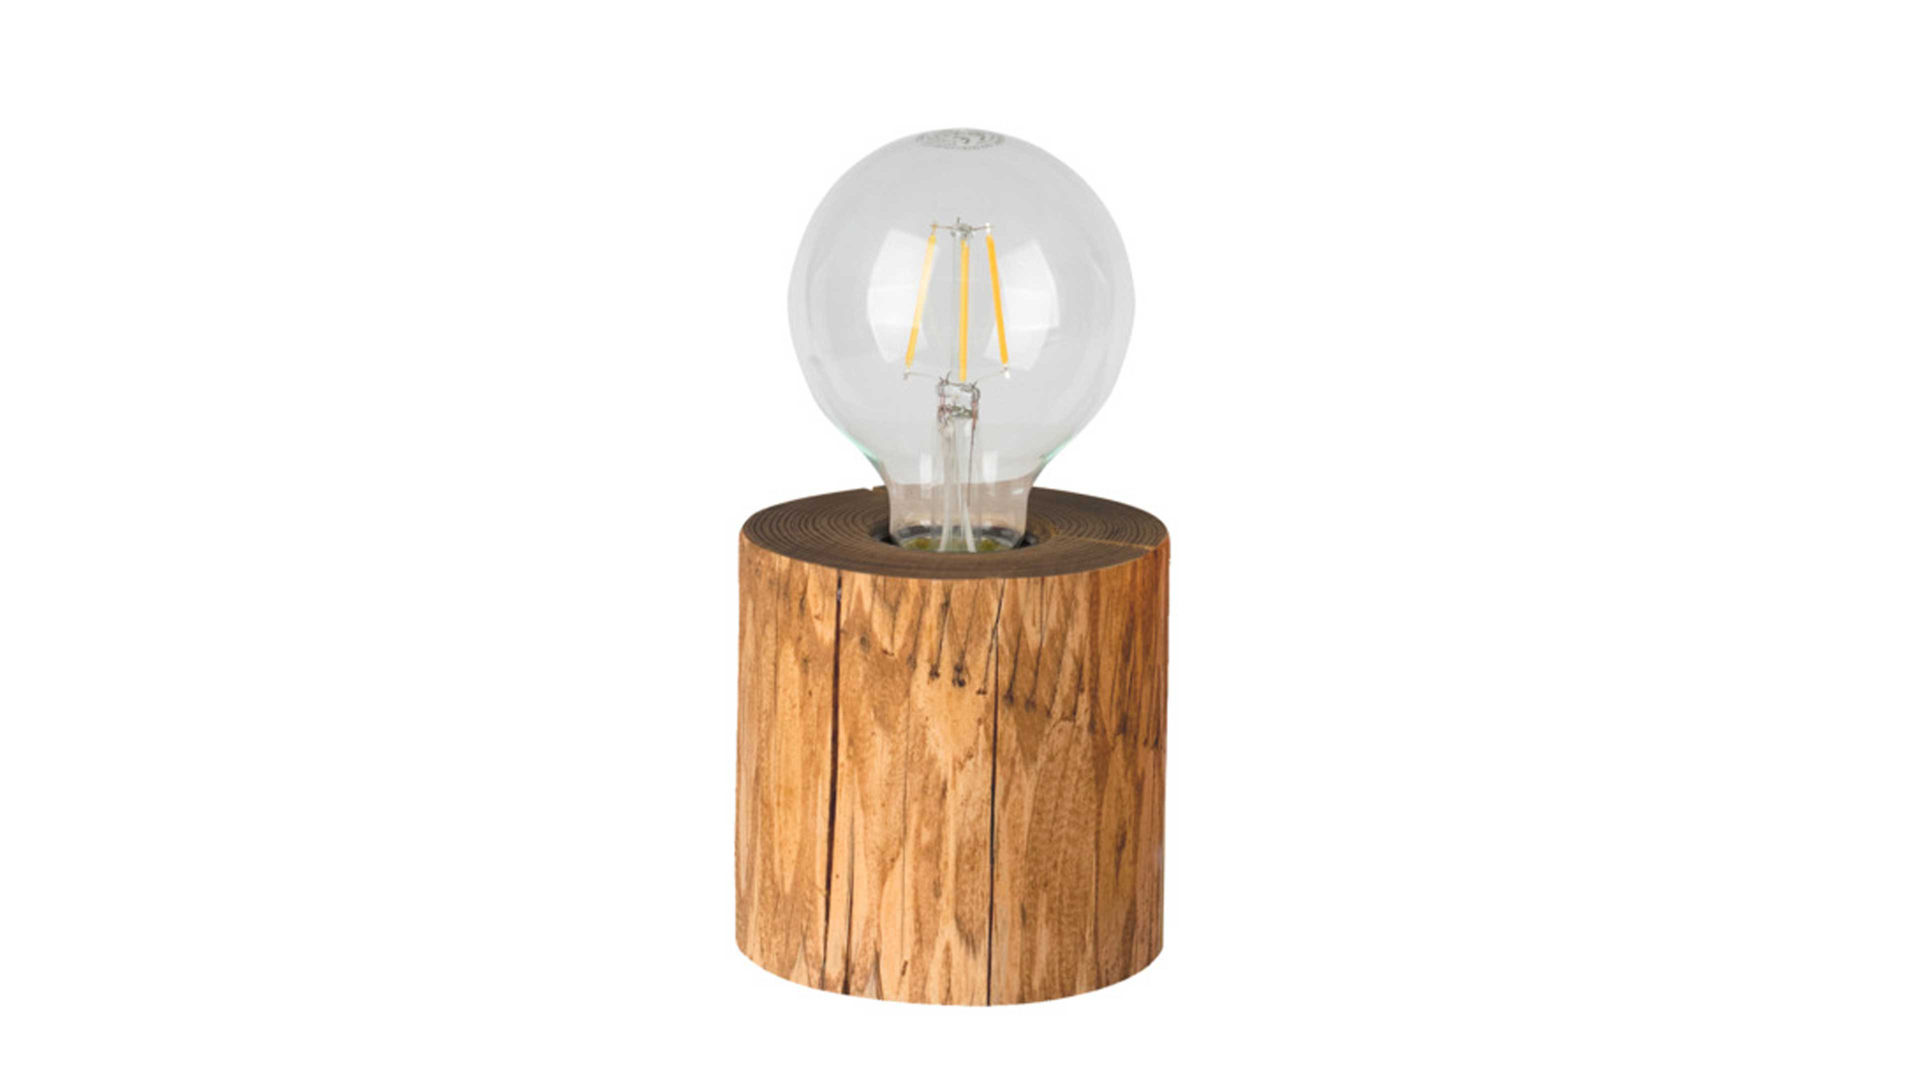 Tischleuchte Spot light aus Holz in Holzfarben SPOT LIGHT Leuchten Serie Astana - Tischleuchte kieferfarbenes Holz  - Durchmesser ca. 10 cm